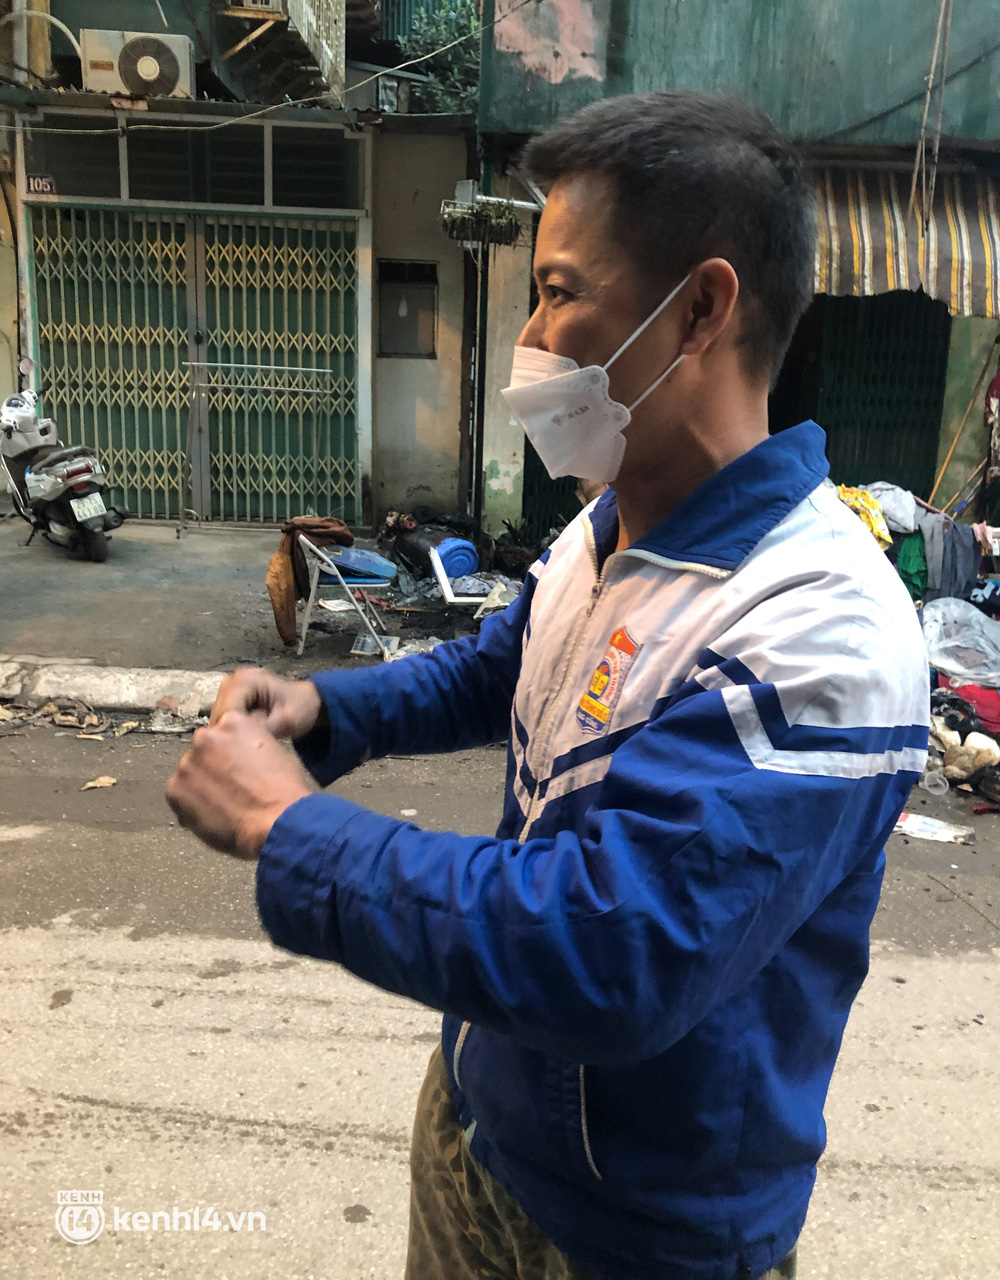 Người đàn ông cứu sống bé gái trong vụ cháy ở Hà Nội kể lại khoảnh khắc nghẹt thở: Dùng hết sức bình sinh đạp bung thanh sắt - Ảnh 5.